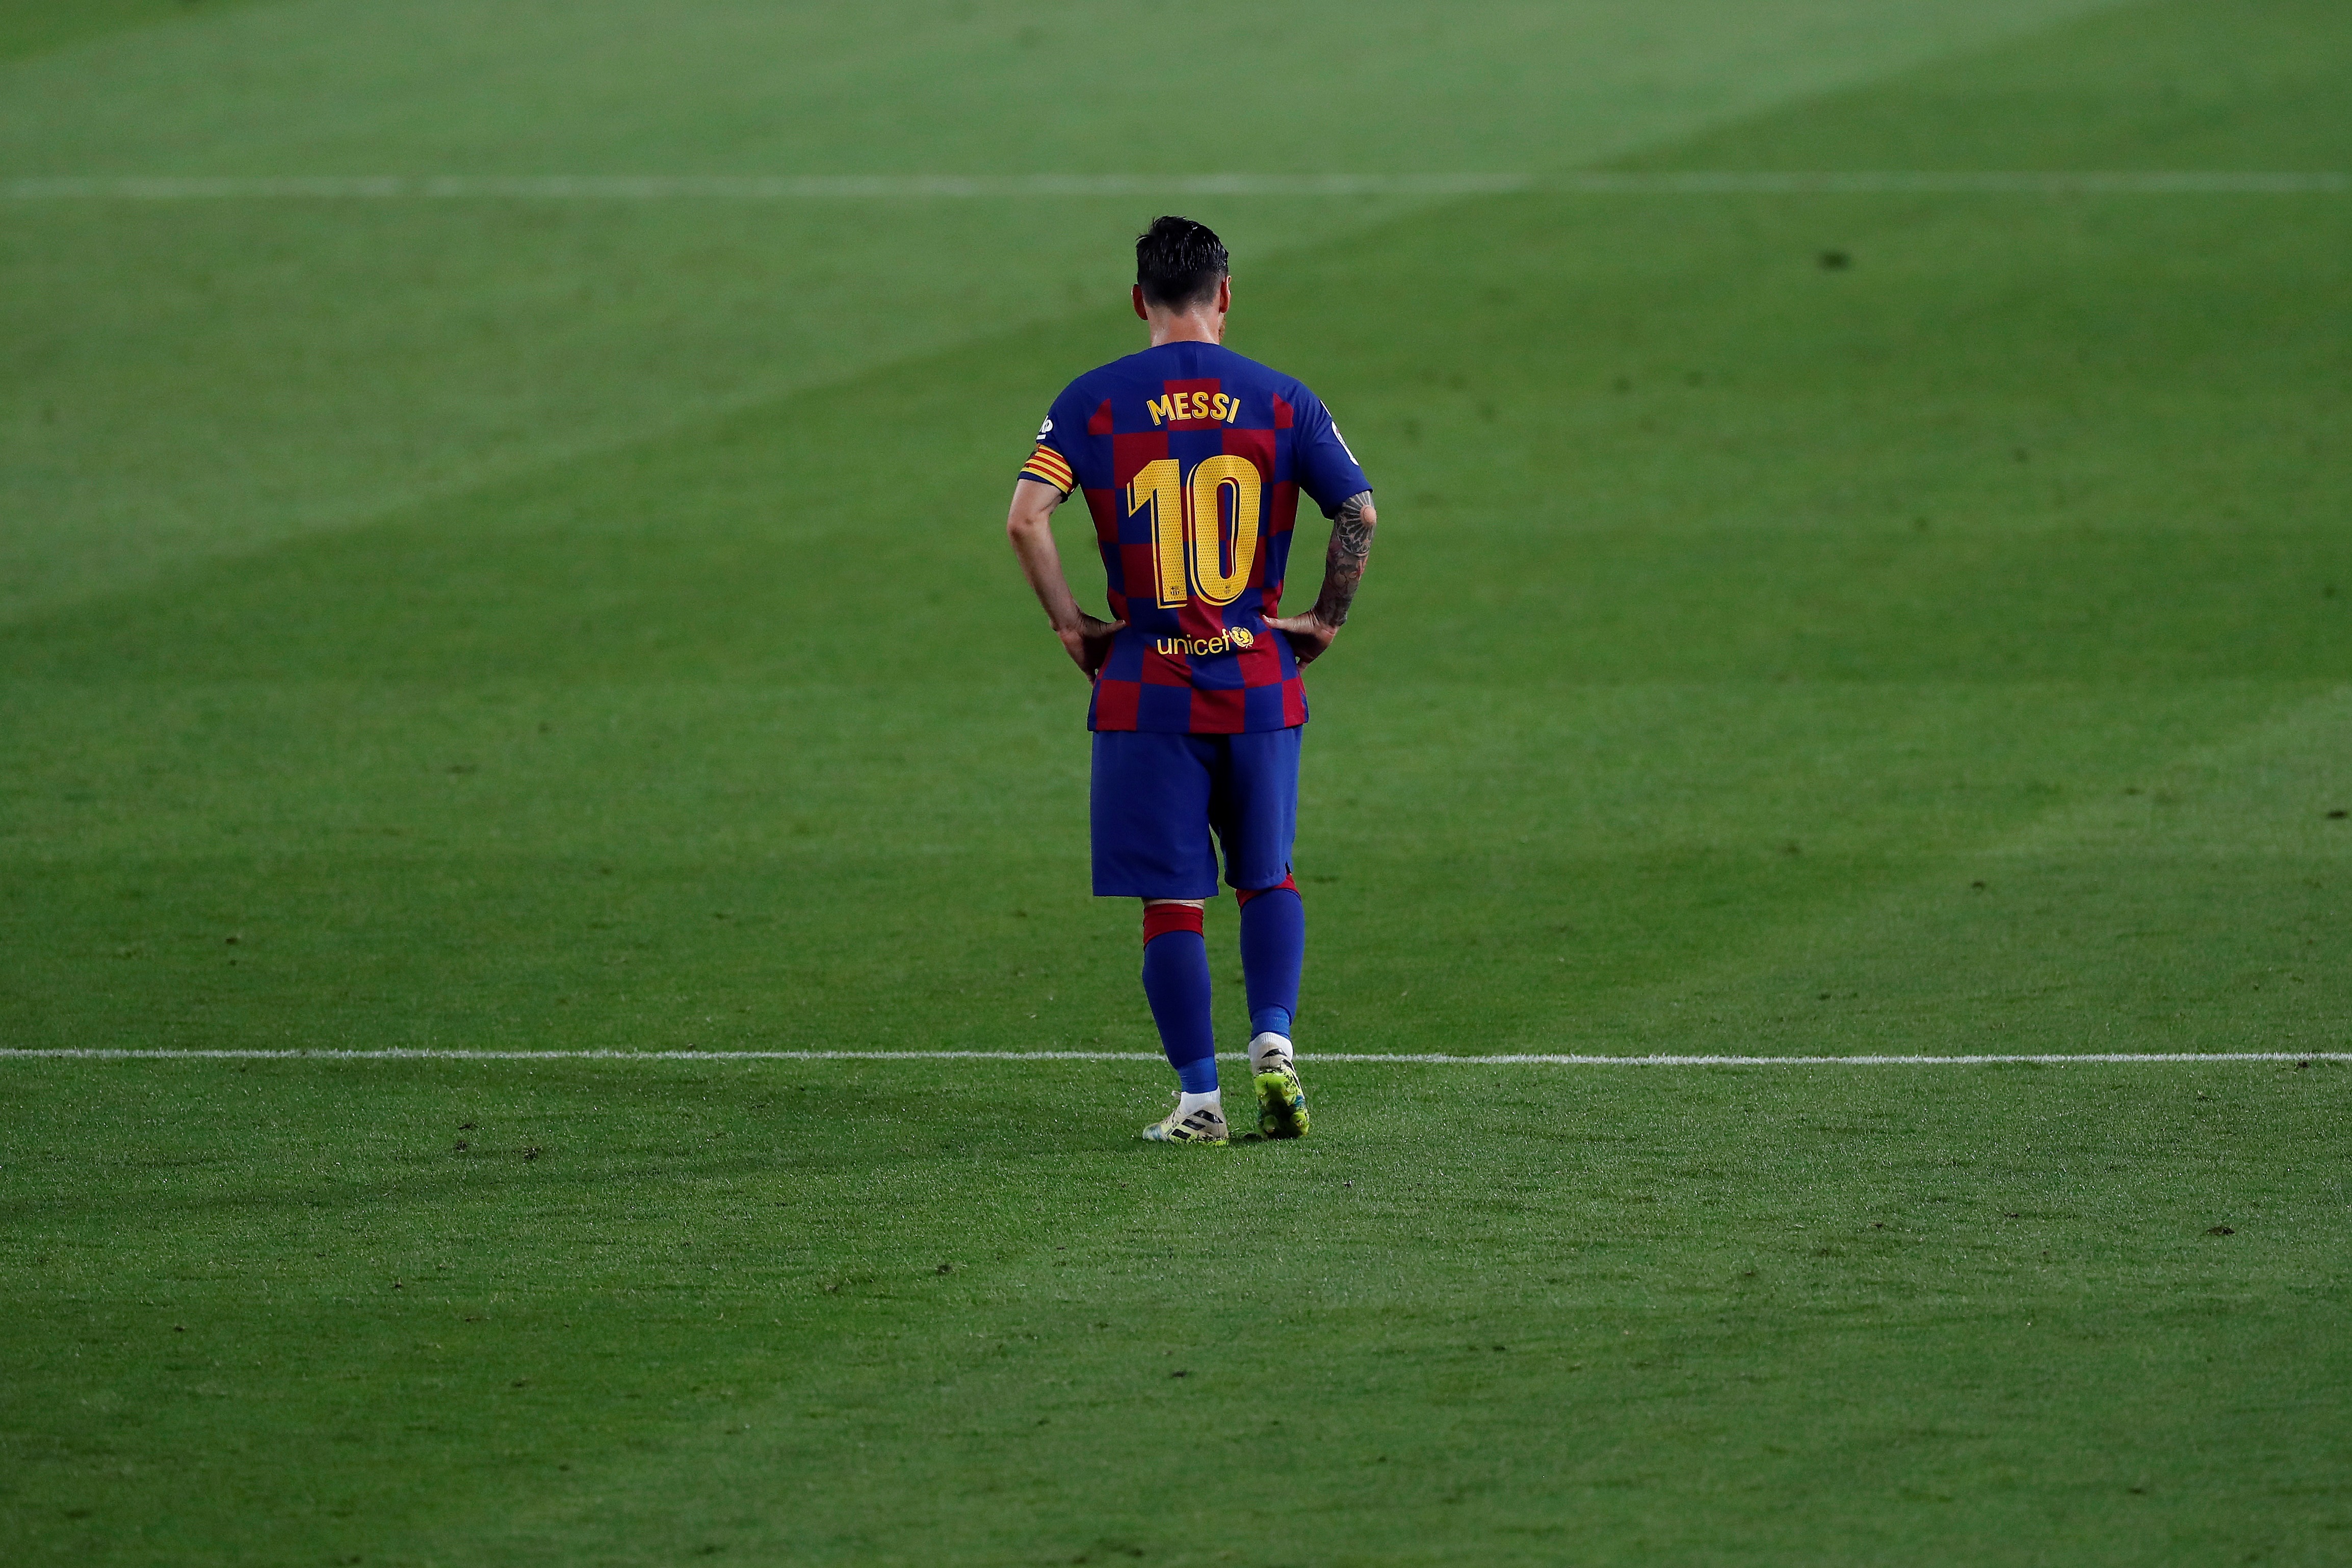 Messi, el dios leyenda que París espera con ilusión